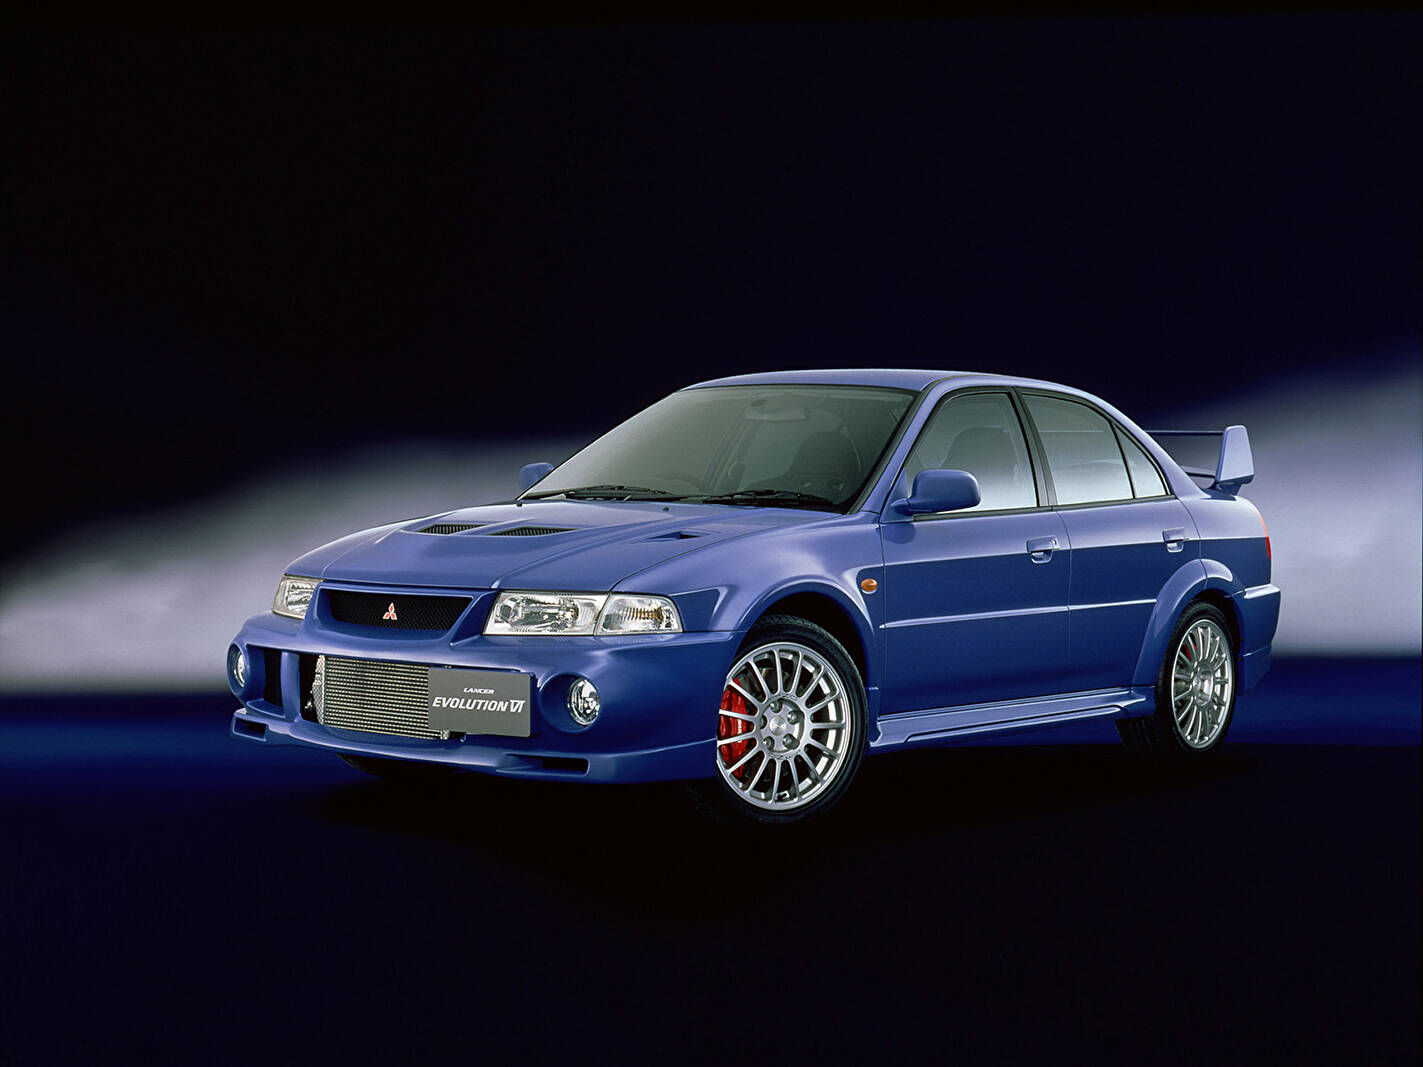 1999 Mitsubishi Lancer GSR Evolution VI